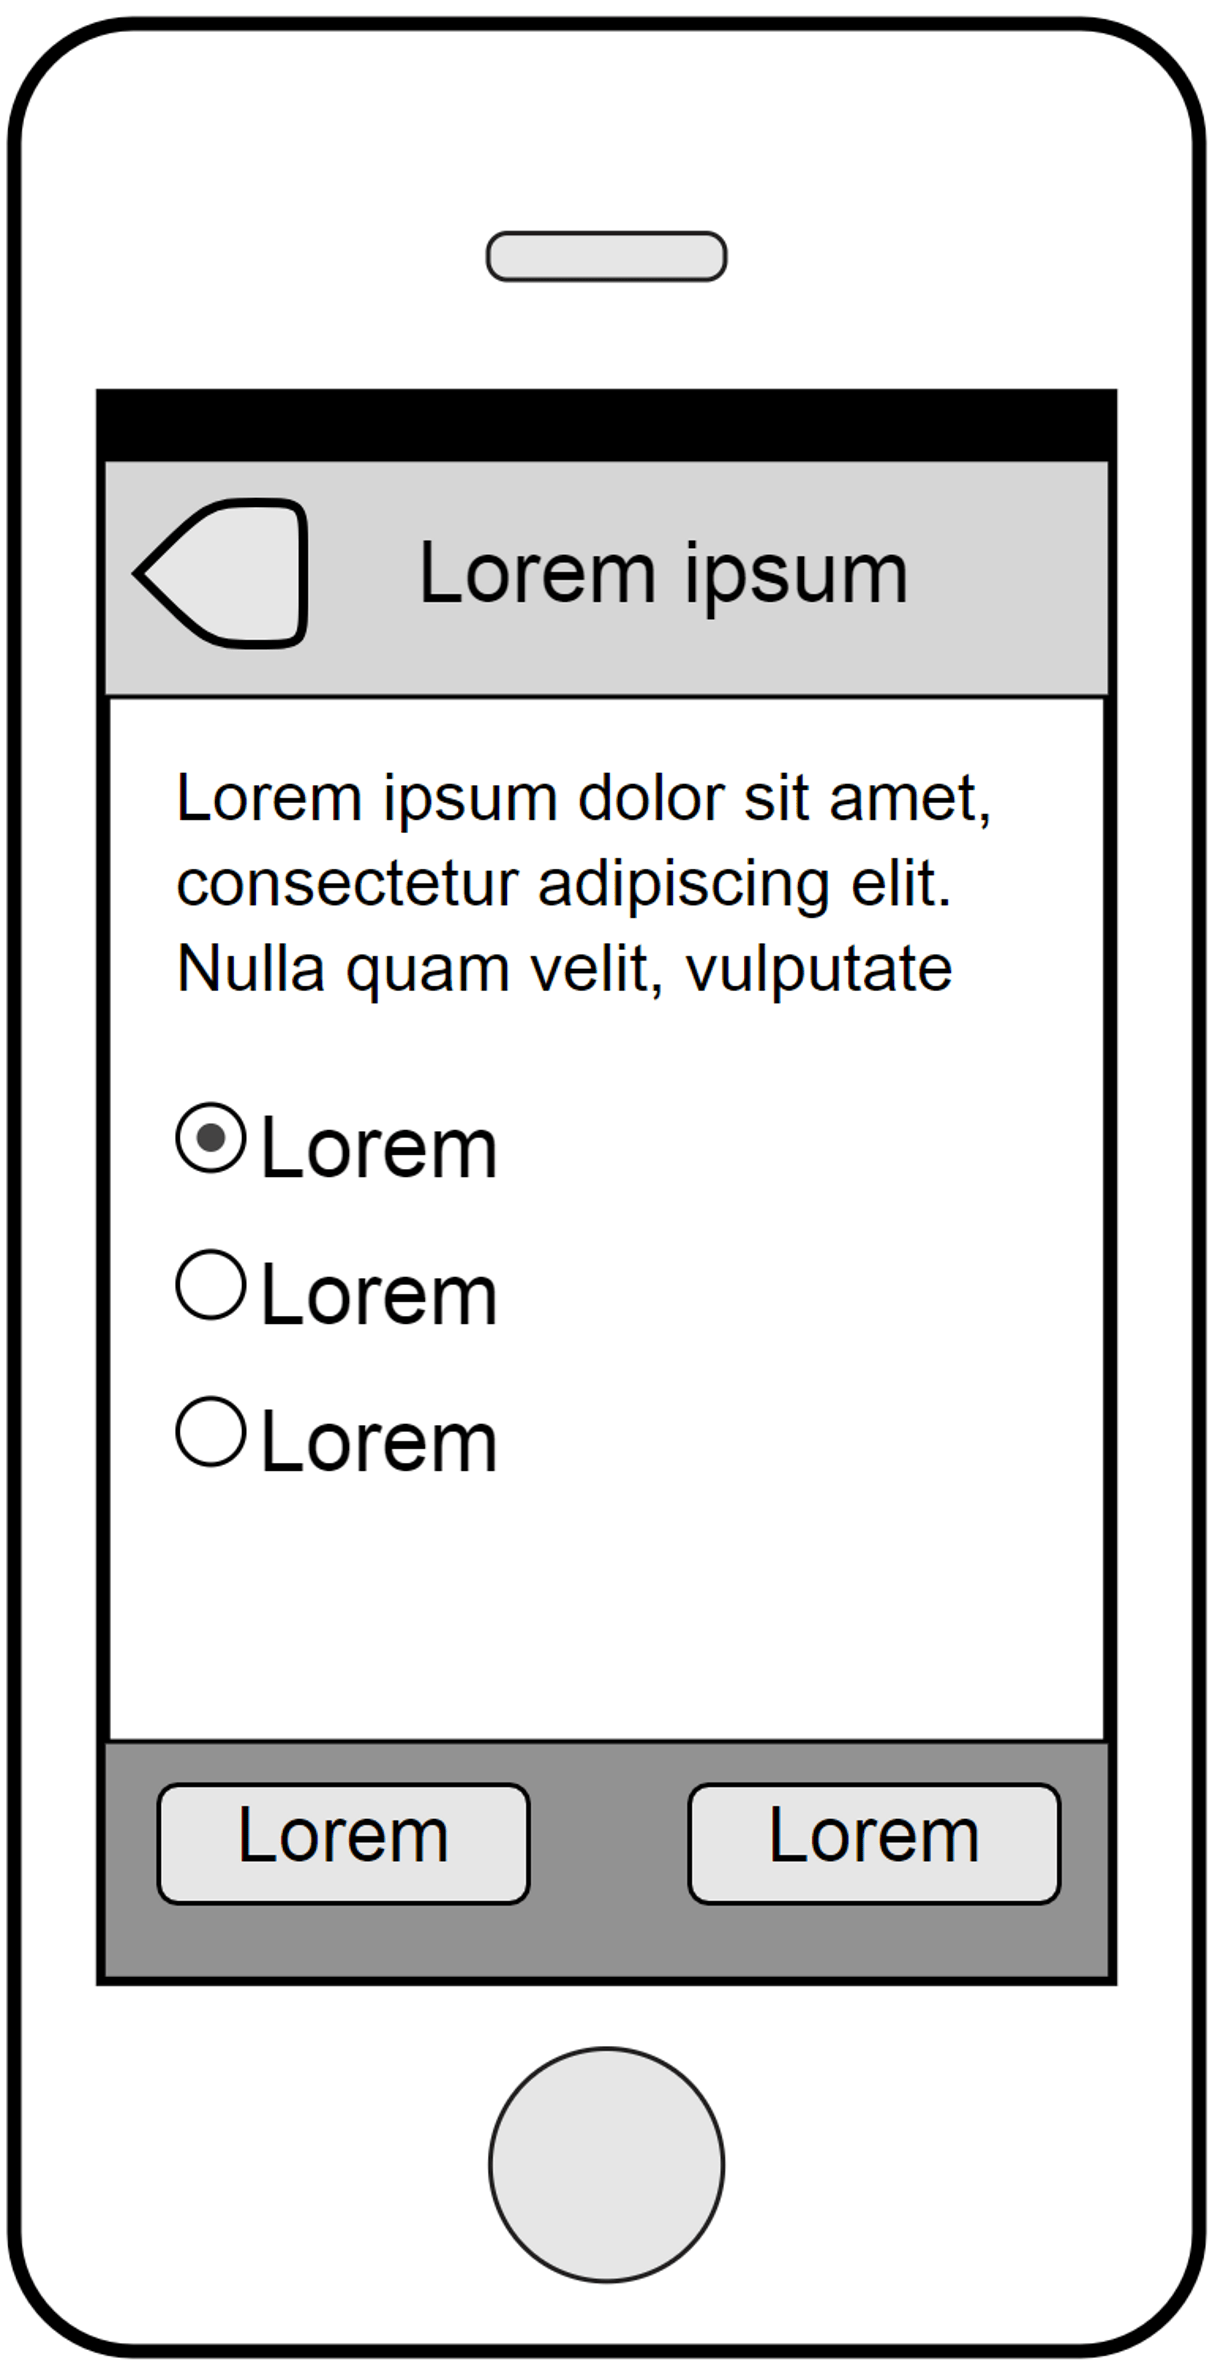 mobile ux: lorem ipsum